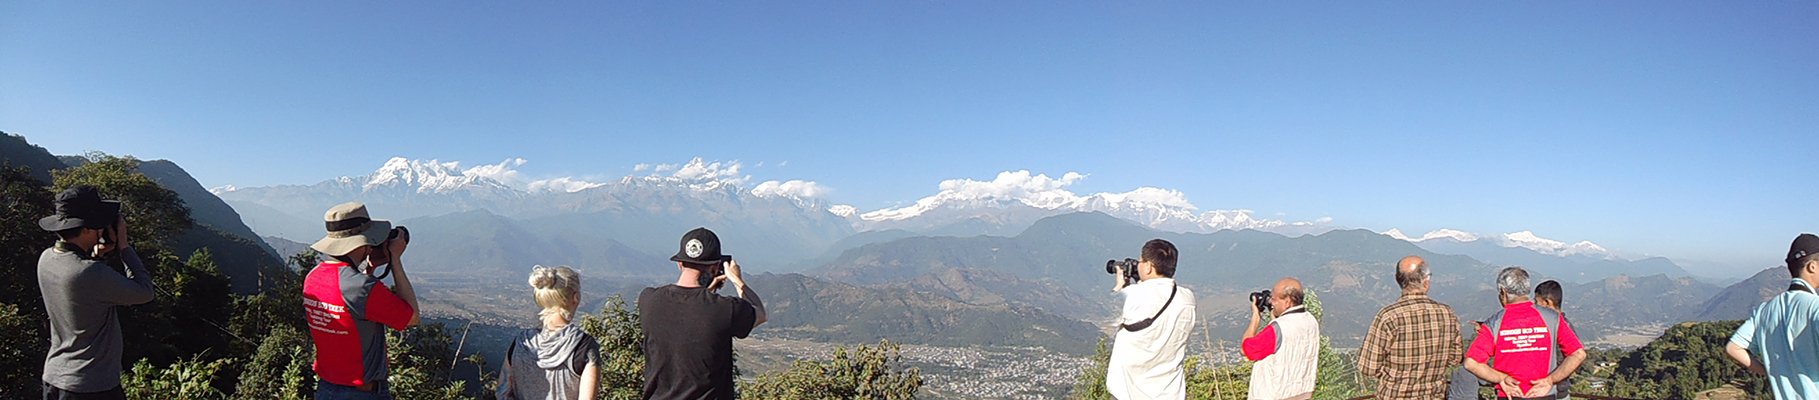 Best scene view in Nepal